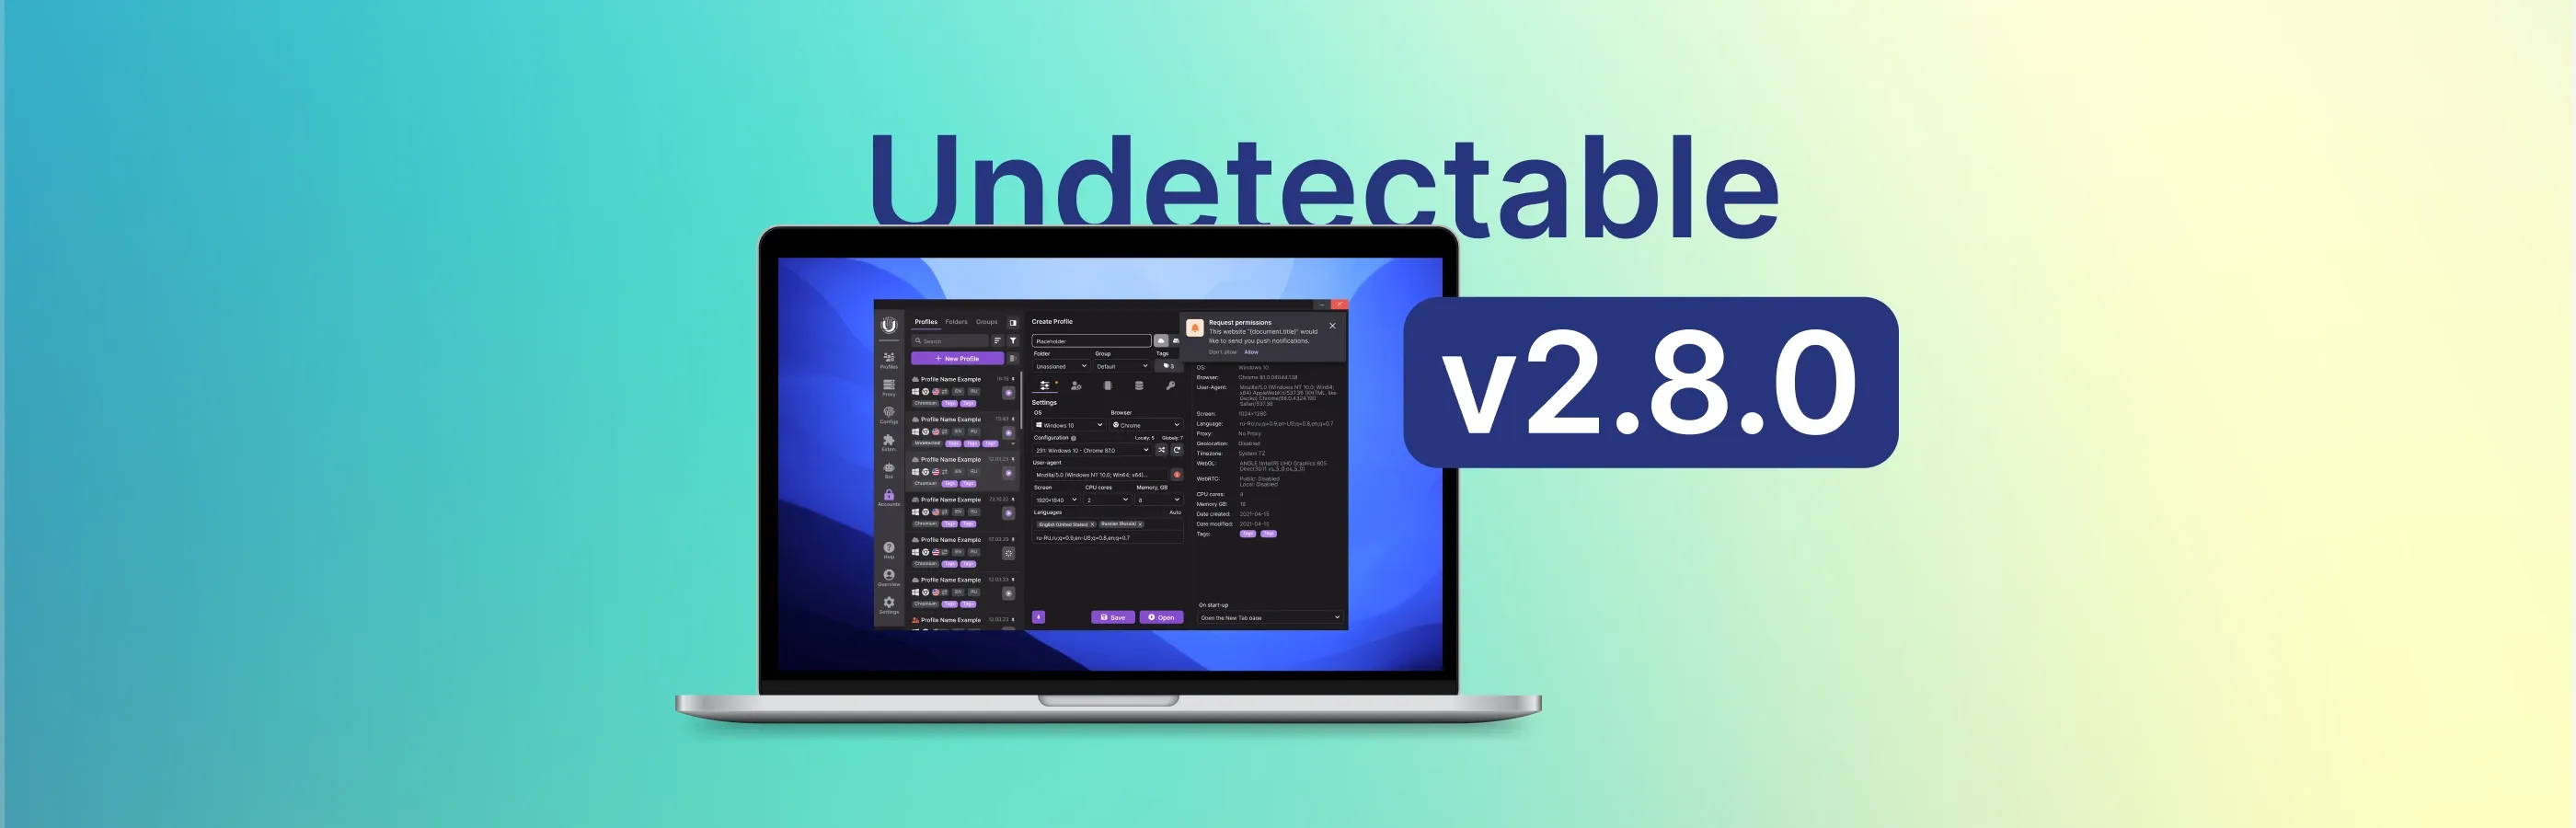 Actualización de Undetectable browser 2.8.0: tema oscuro y nuevas características